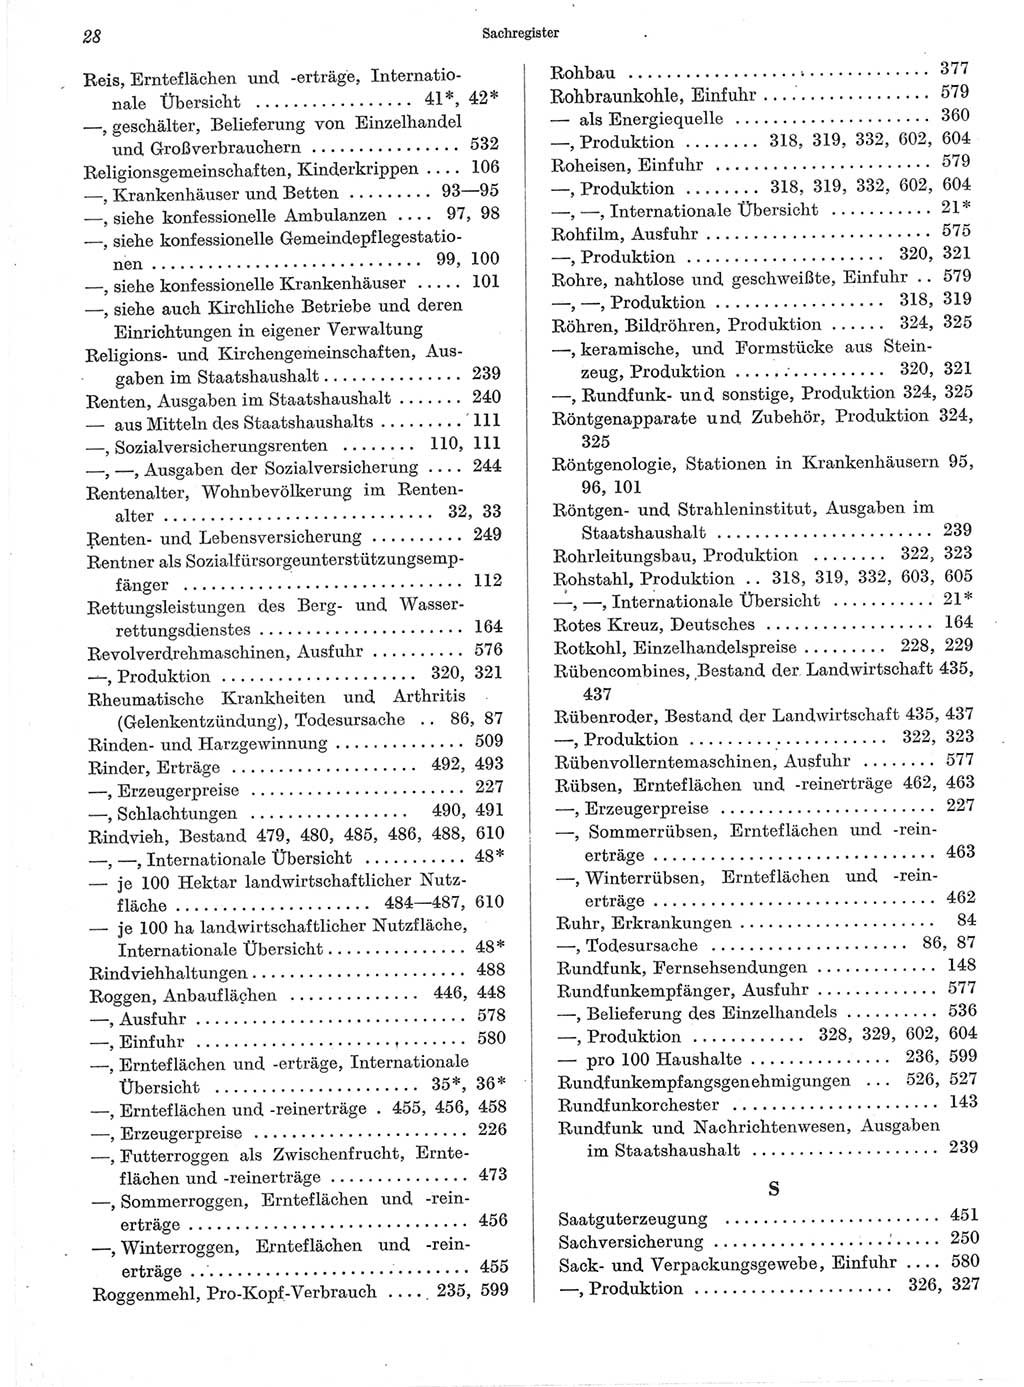 Statistisches Jahrbuch der Deutschen Demokratischen Republik (DDR) 1960-1961, Seite 28 (Stat. Jb. DDR 1960-1961, S. 28)